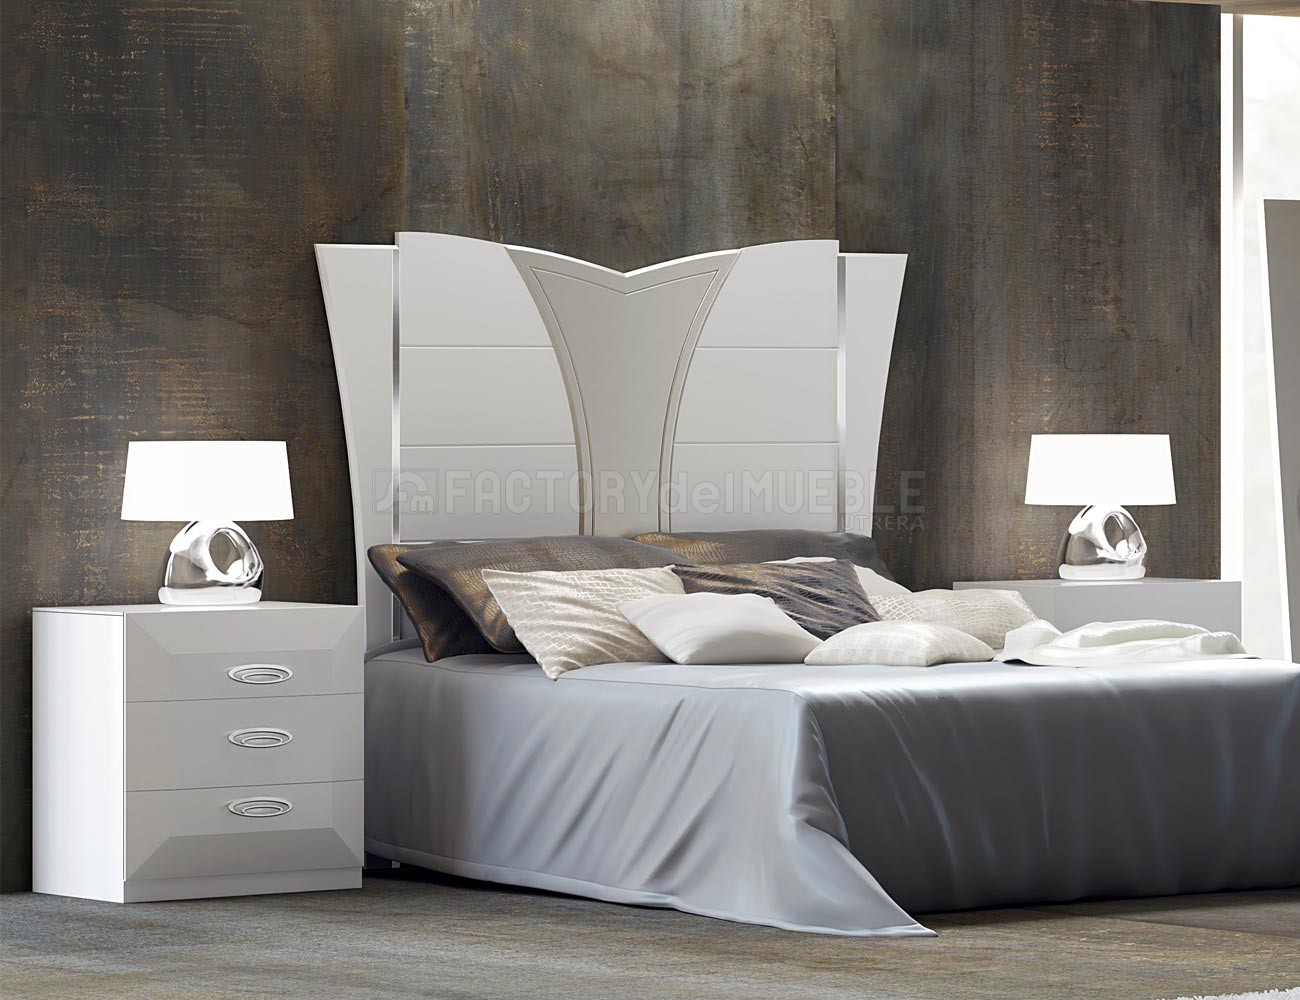 Dormitorio compuesto por: Cabecero blanco molduras cava. Mesita blanca.